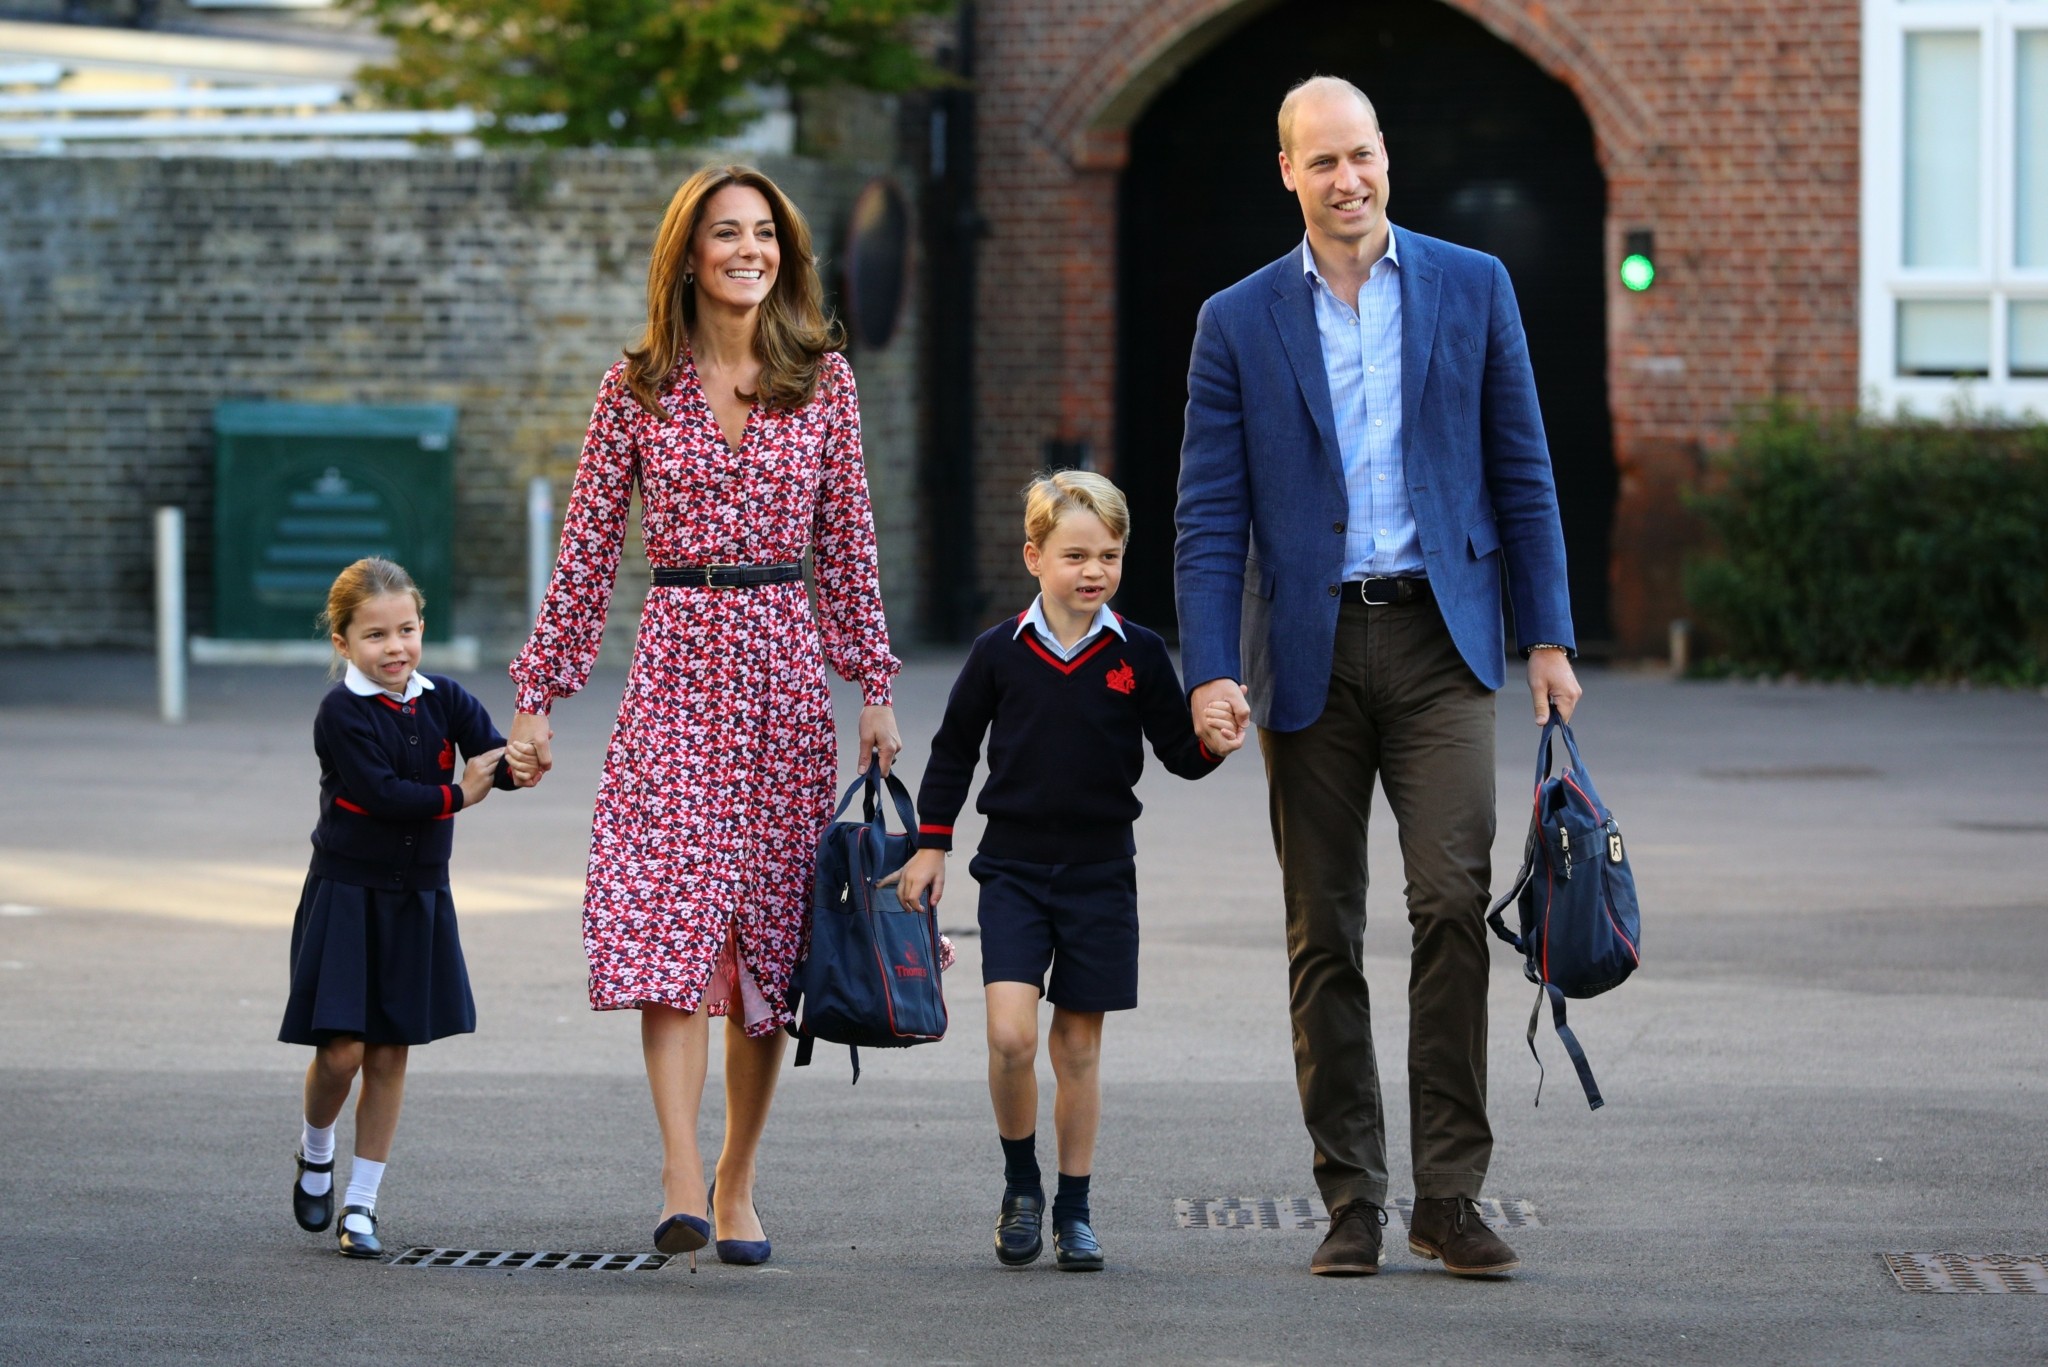 Lambrook School: Αυτό είναι το θρυλικό σχολείο “κλειστό club” όπου φοιτά το αύριο της βρετανικής βασιλικής οικογένειας